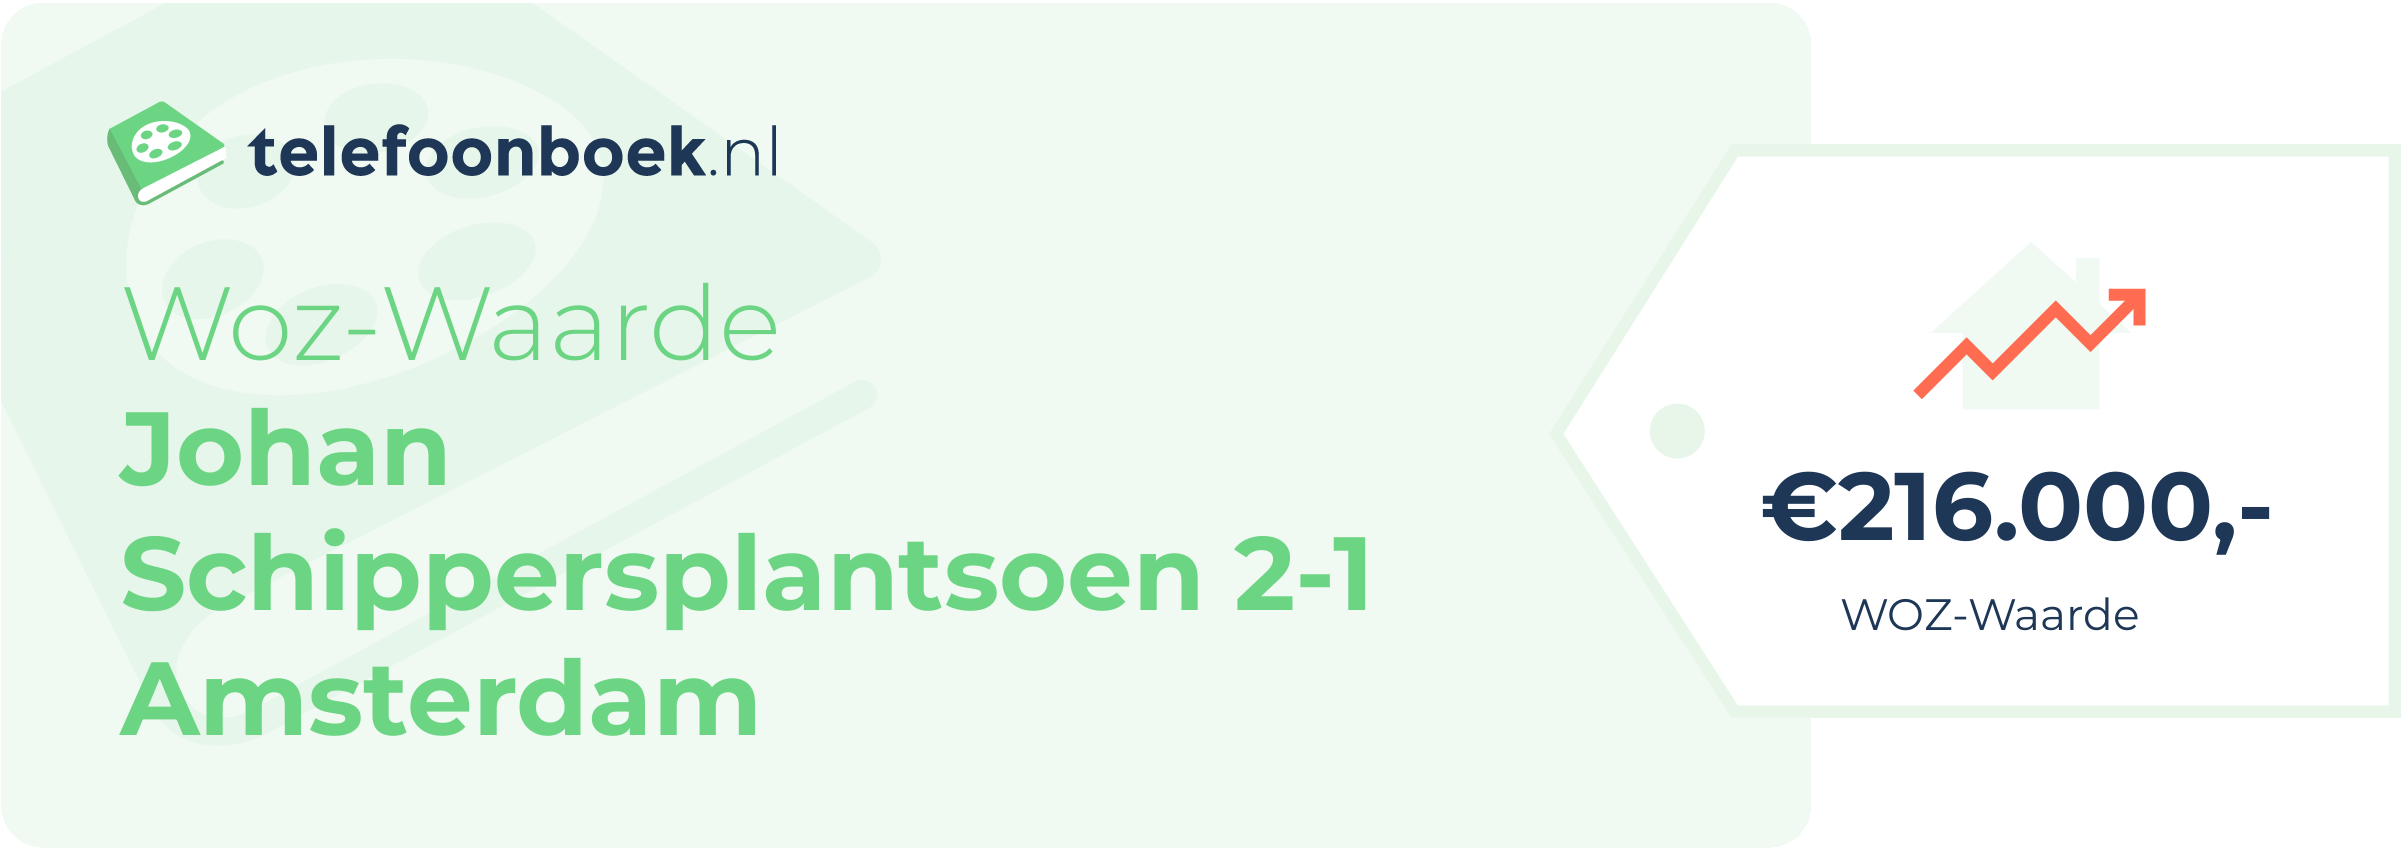 WOZ-waarde Johan Schippersplantsoen 2-1 Amsterdam